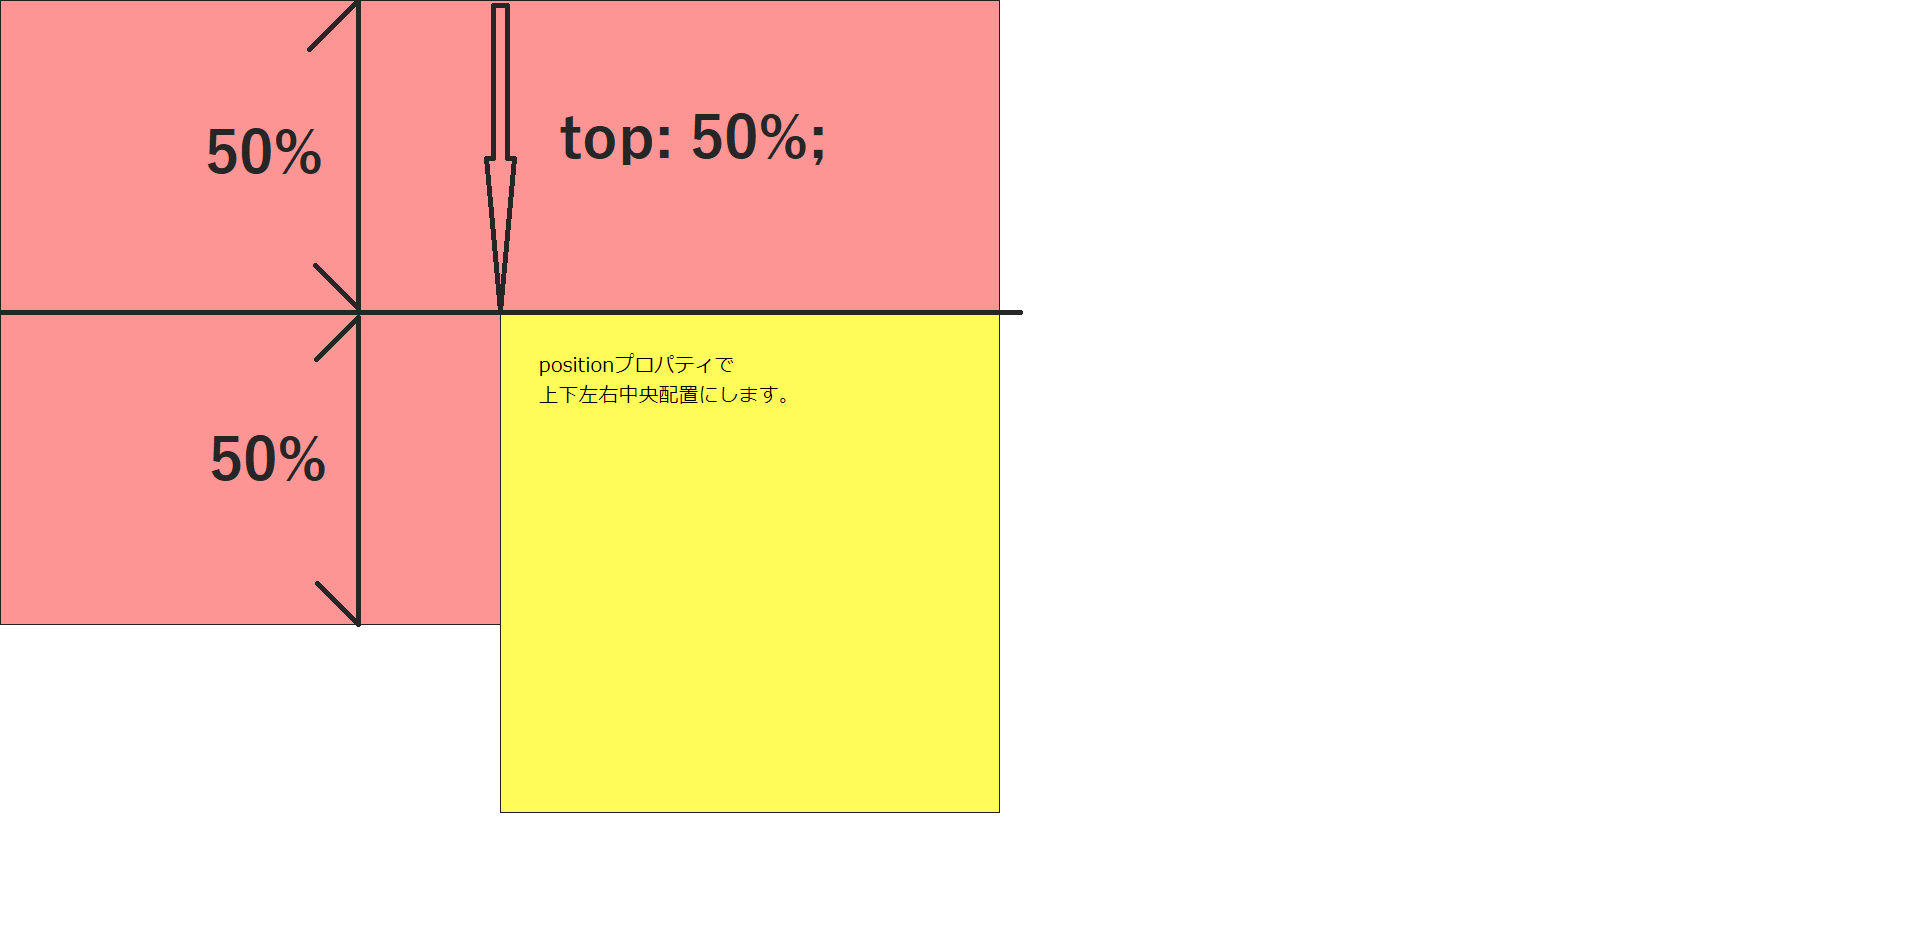 黄色ボックスの要素の上がピンクボックスの上から50%の位置にぴったり合う状態